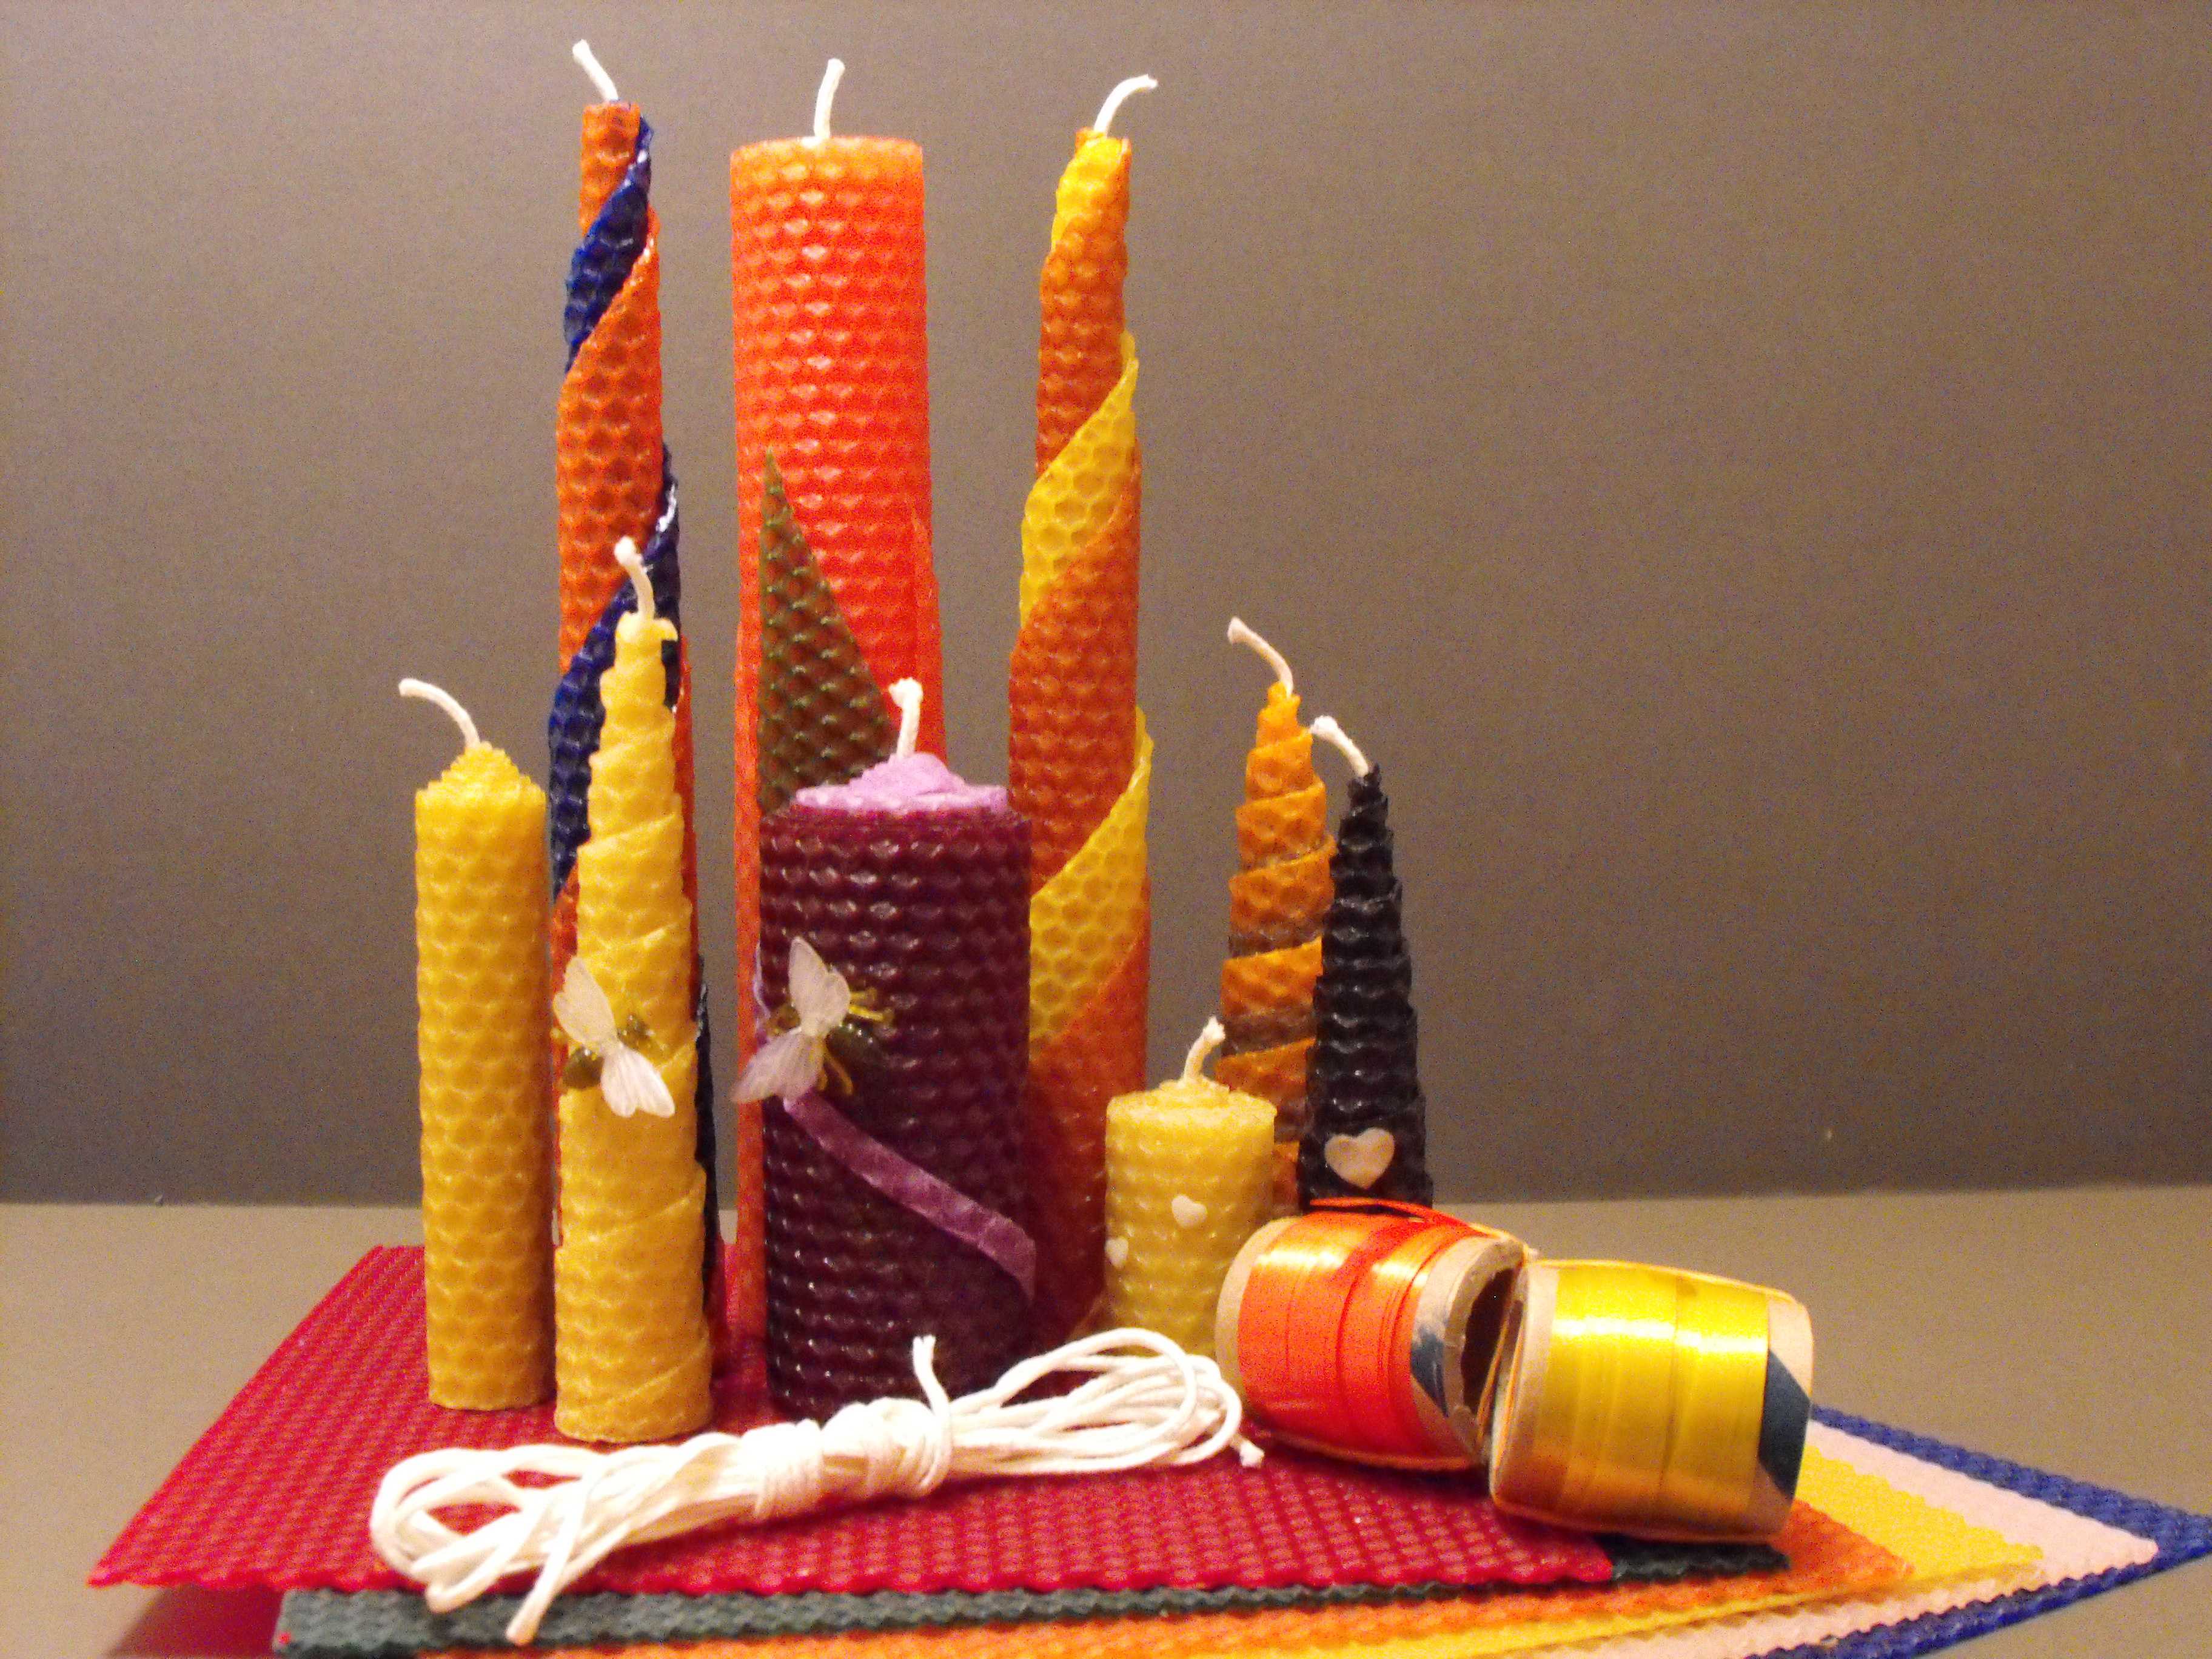 Изготовление свечей из вощины и воска в домашних условиях как бизнес